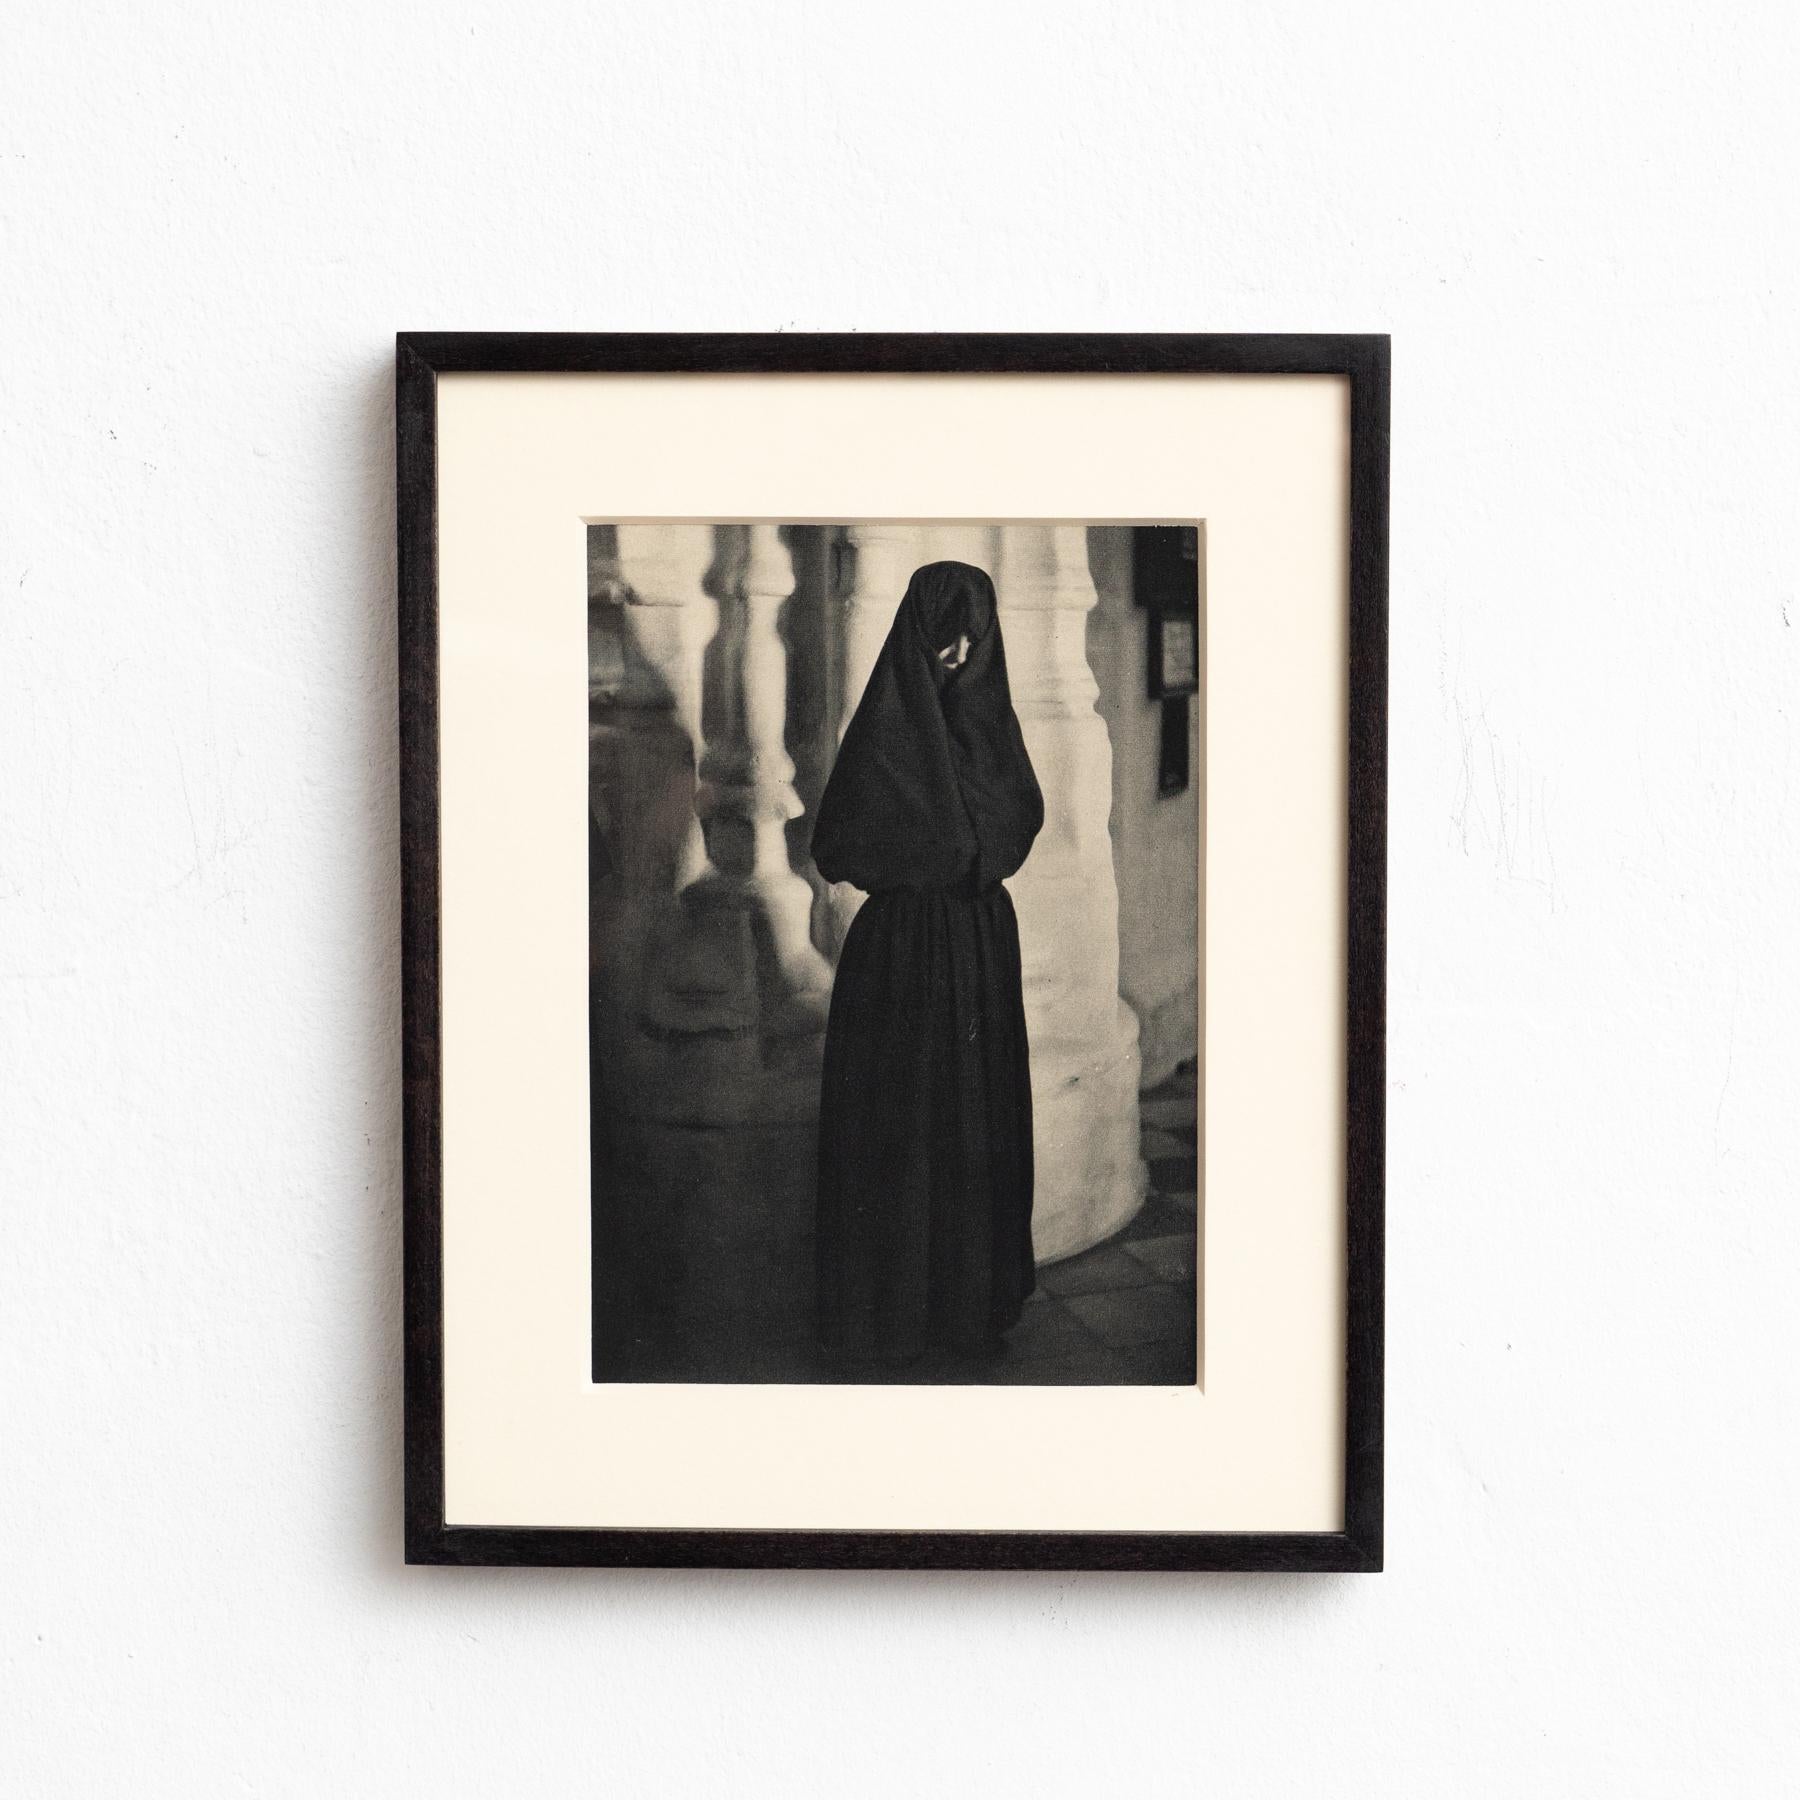 Die Vision von Jose Ortiz Echagüe: Das spanische Erbe in Photogravüre, um 1930

Ab 1930
Fotografie von Jose Ortiz Echagüe
Fototiefdruck
Gerahmt in schwarz lackiertem Holz
Abmessungen: 31,5 cm (H) x 25 cm (B) x 3 cm (T)

Tauchen Sie ein in die